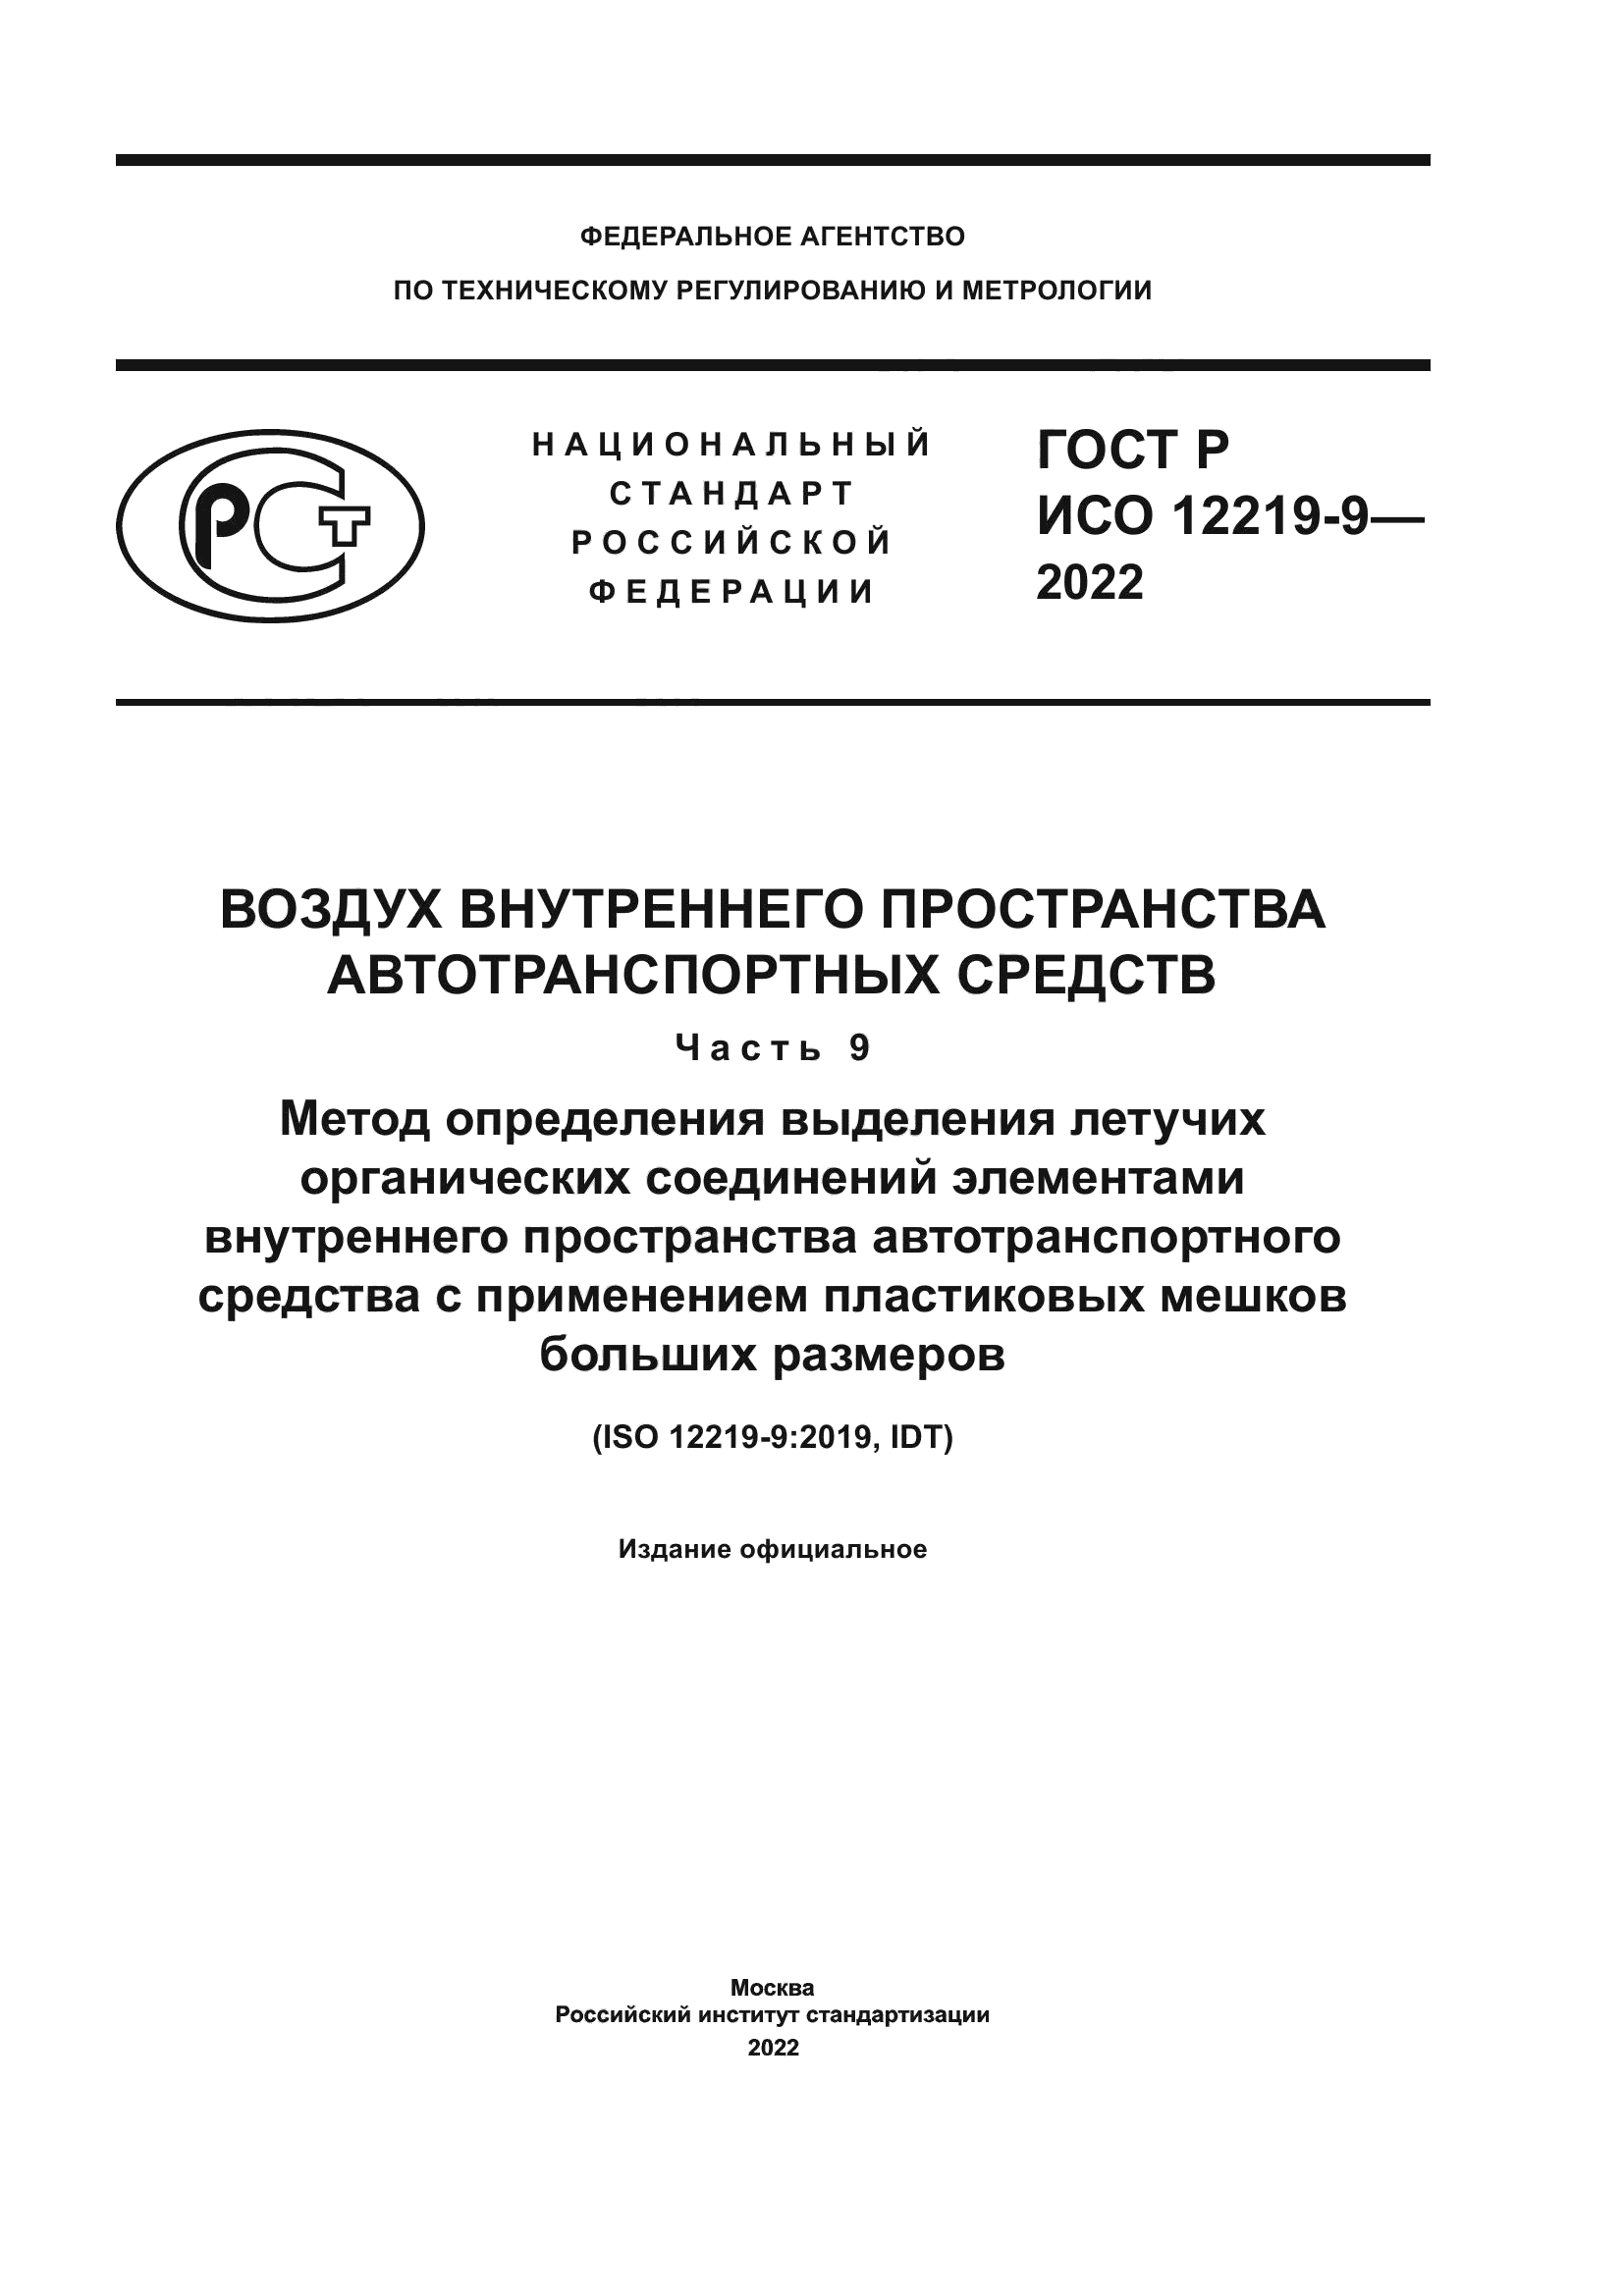 ГОСТ Р ИСО 12219-9-2022